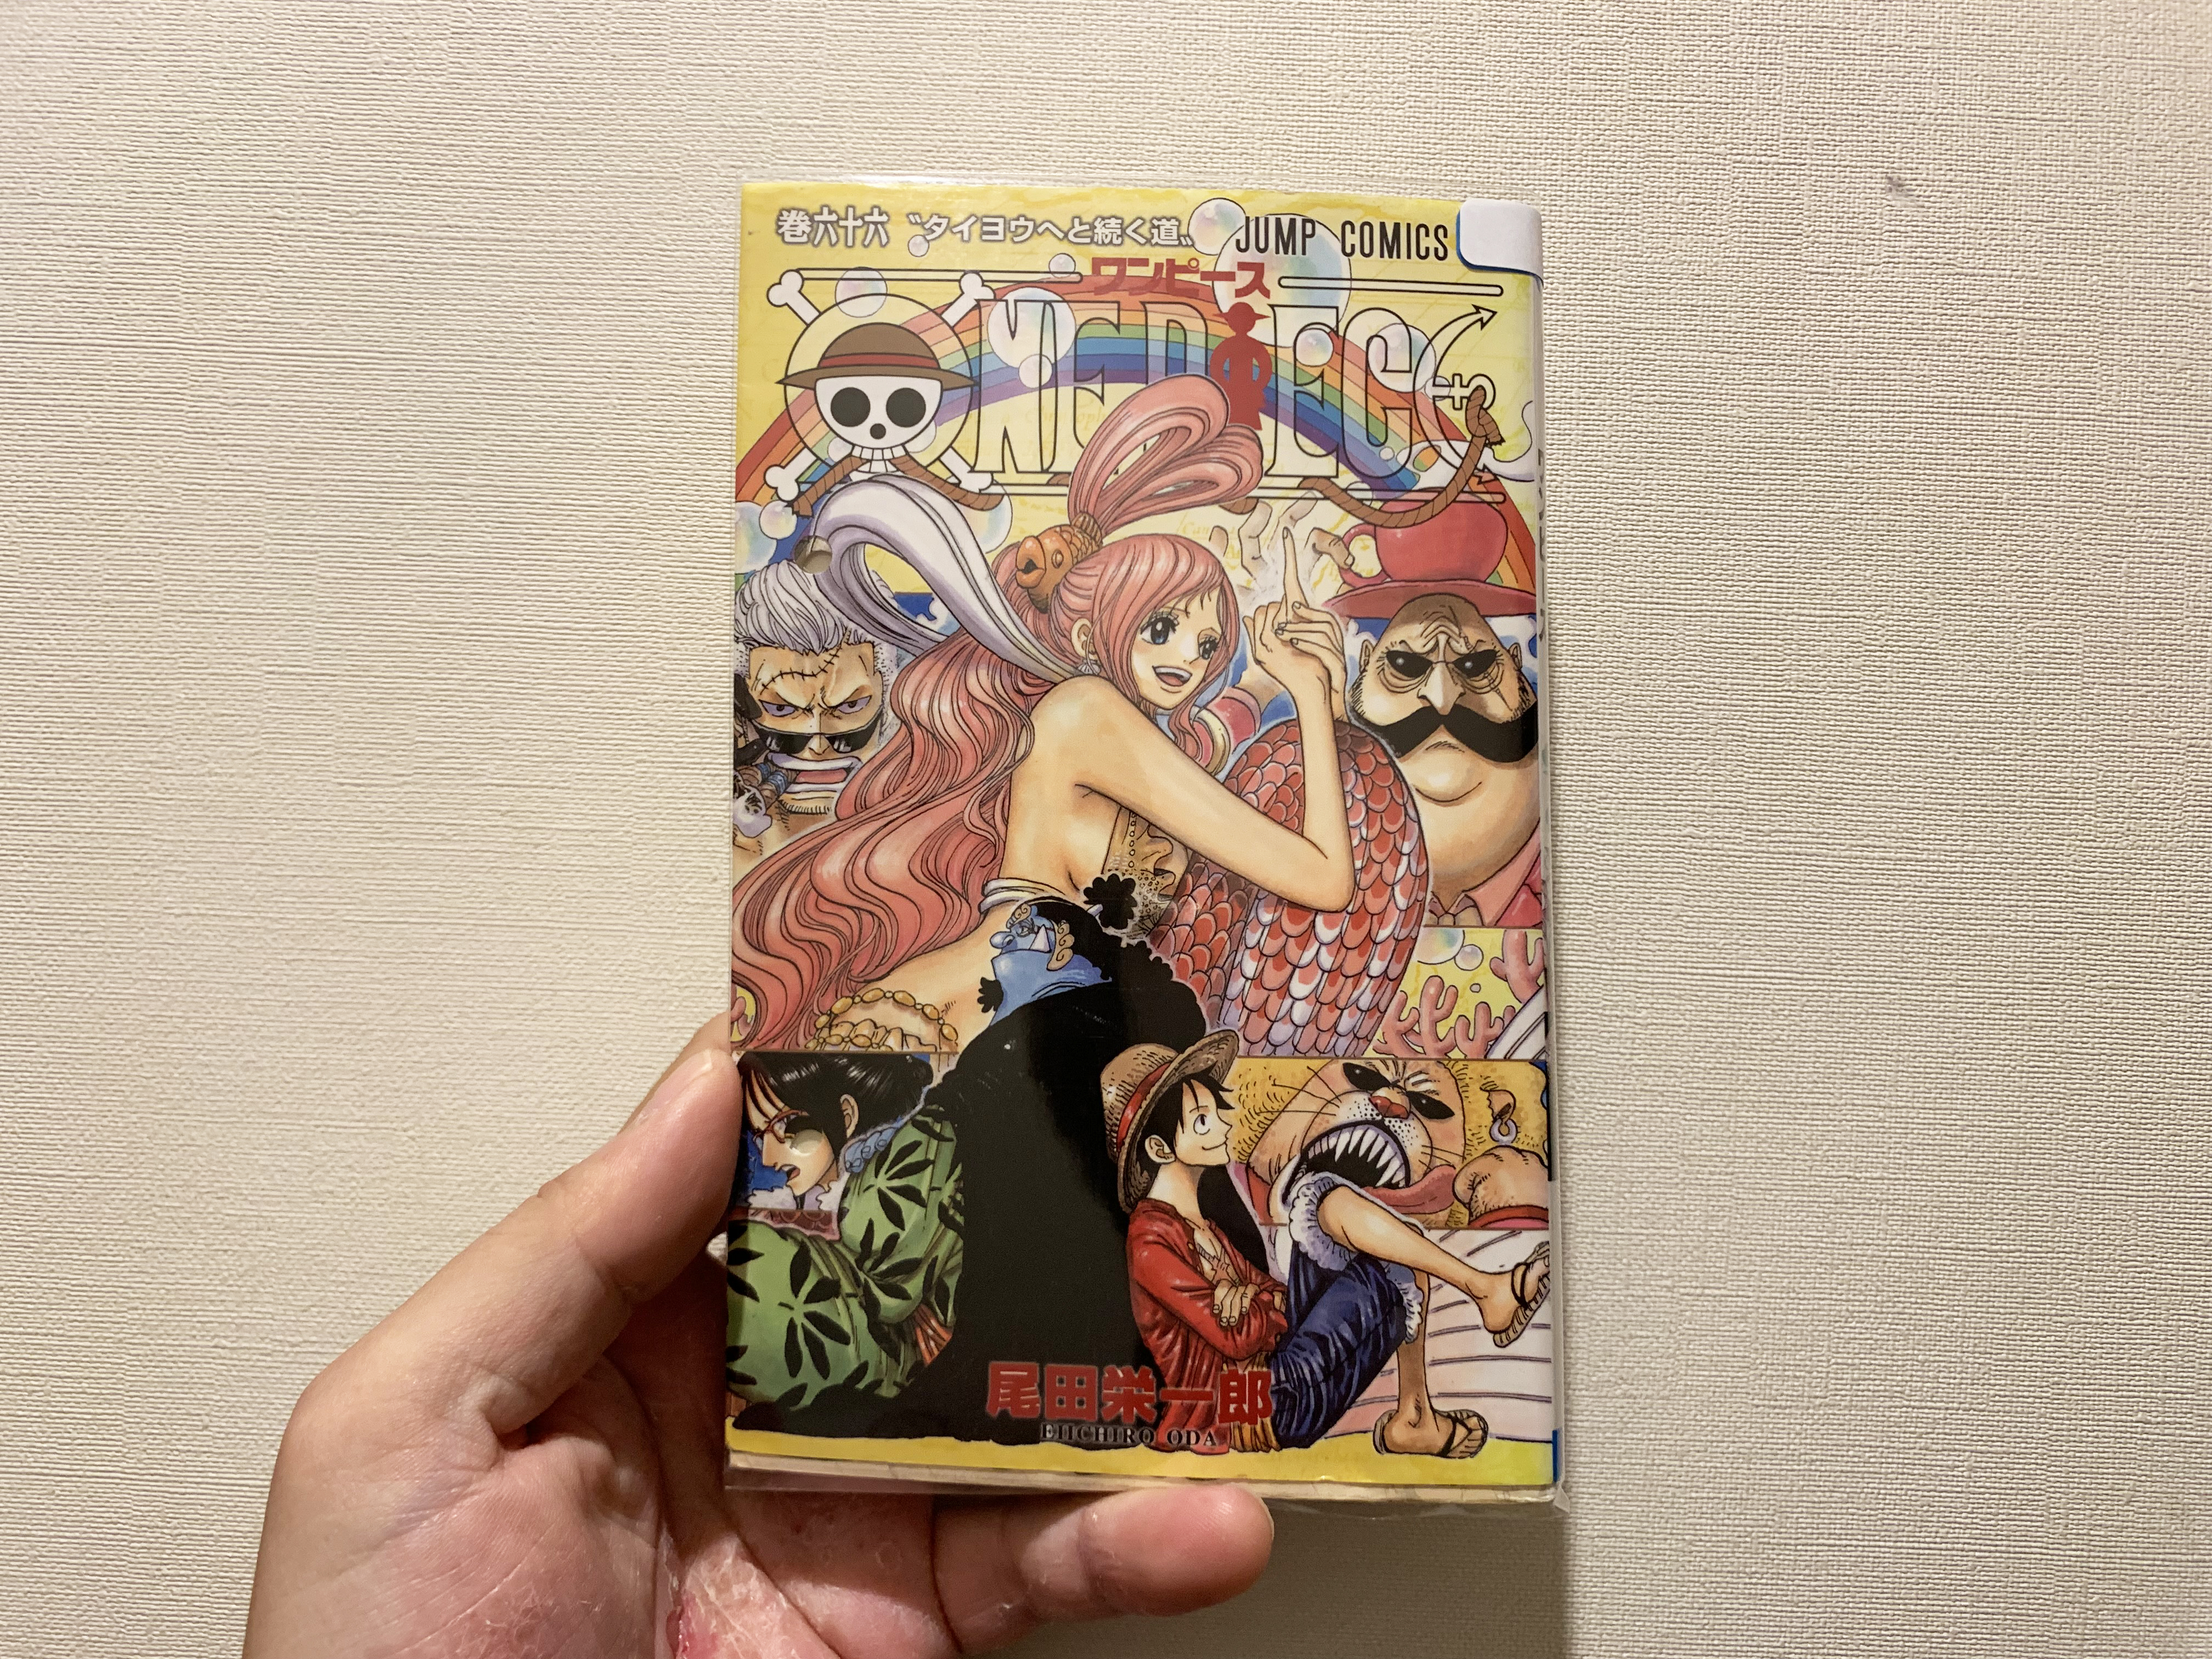 正規日本代理店 ワンピース漫画1巻から99巻まで 全巻セット